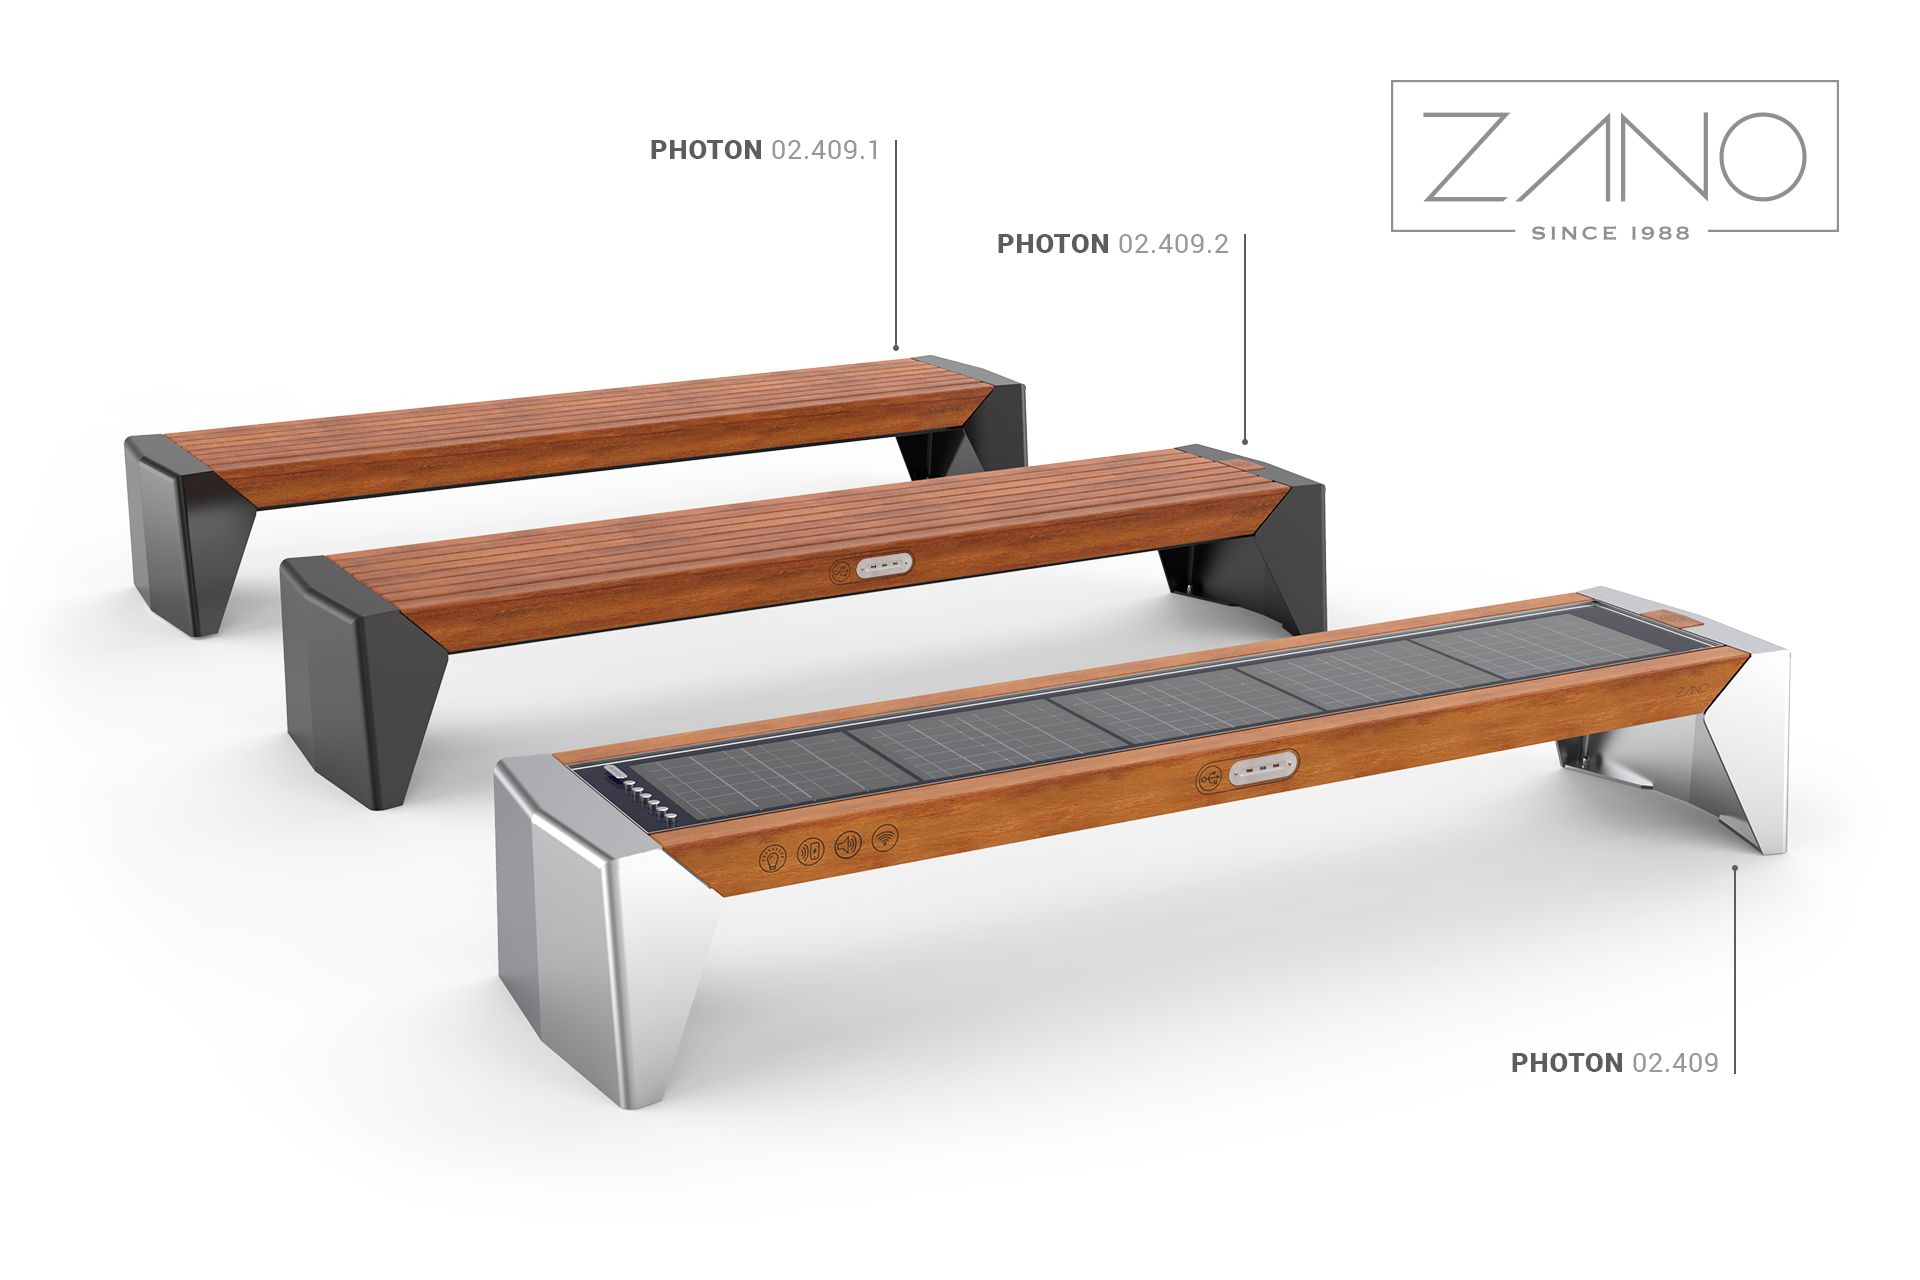 Photon bench, multimedia bench, solar-powered bench, e-bench